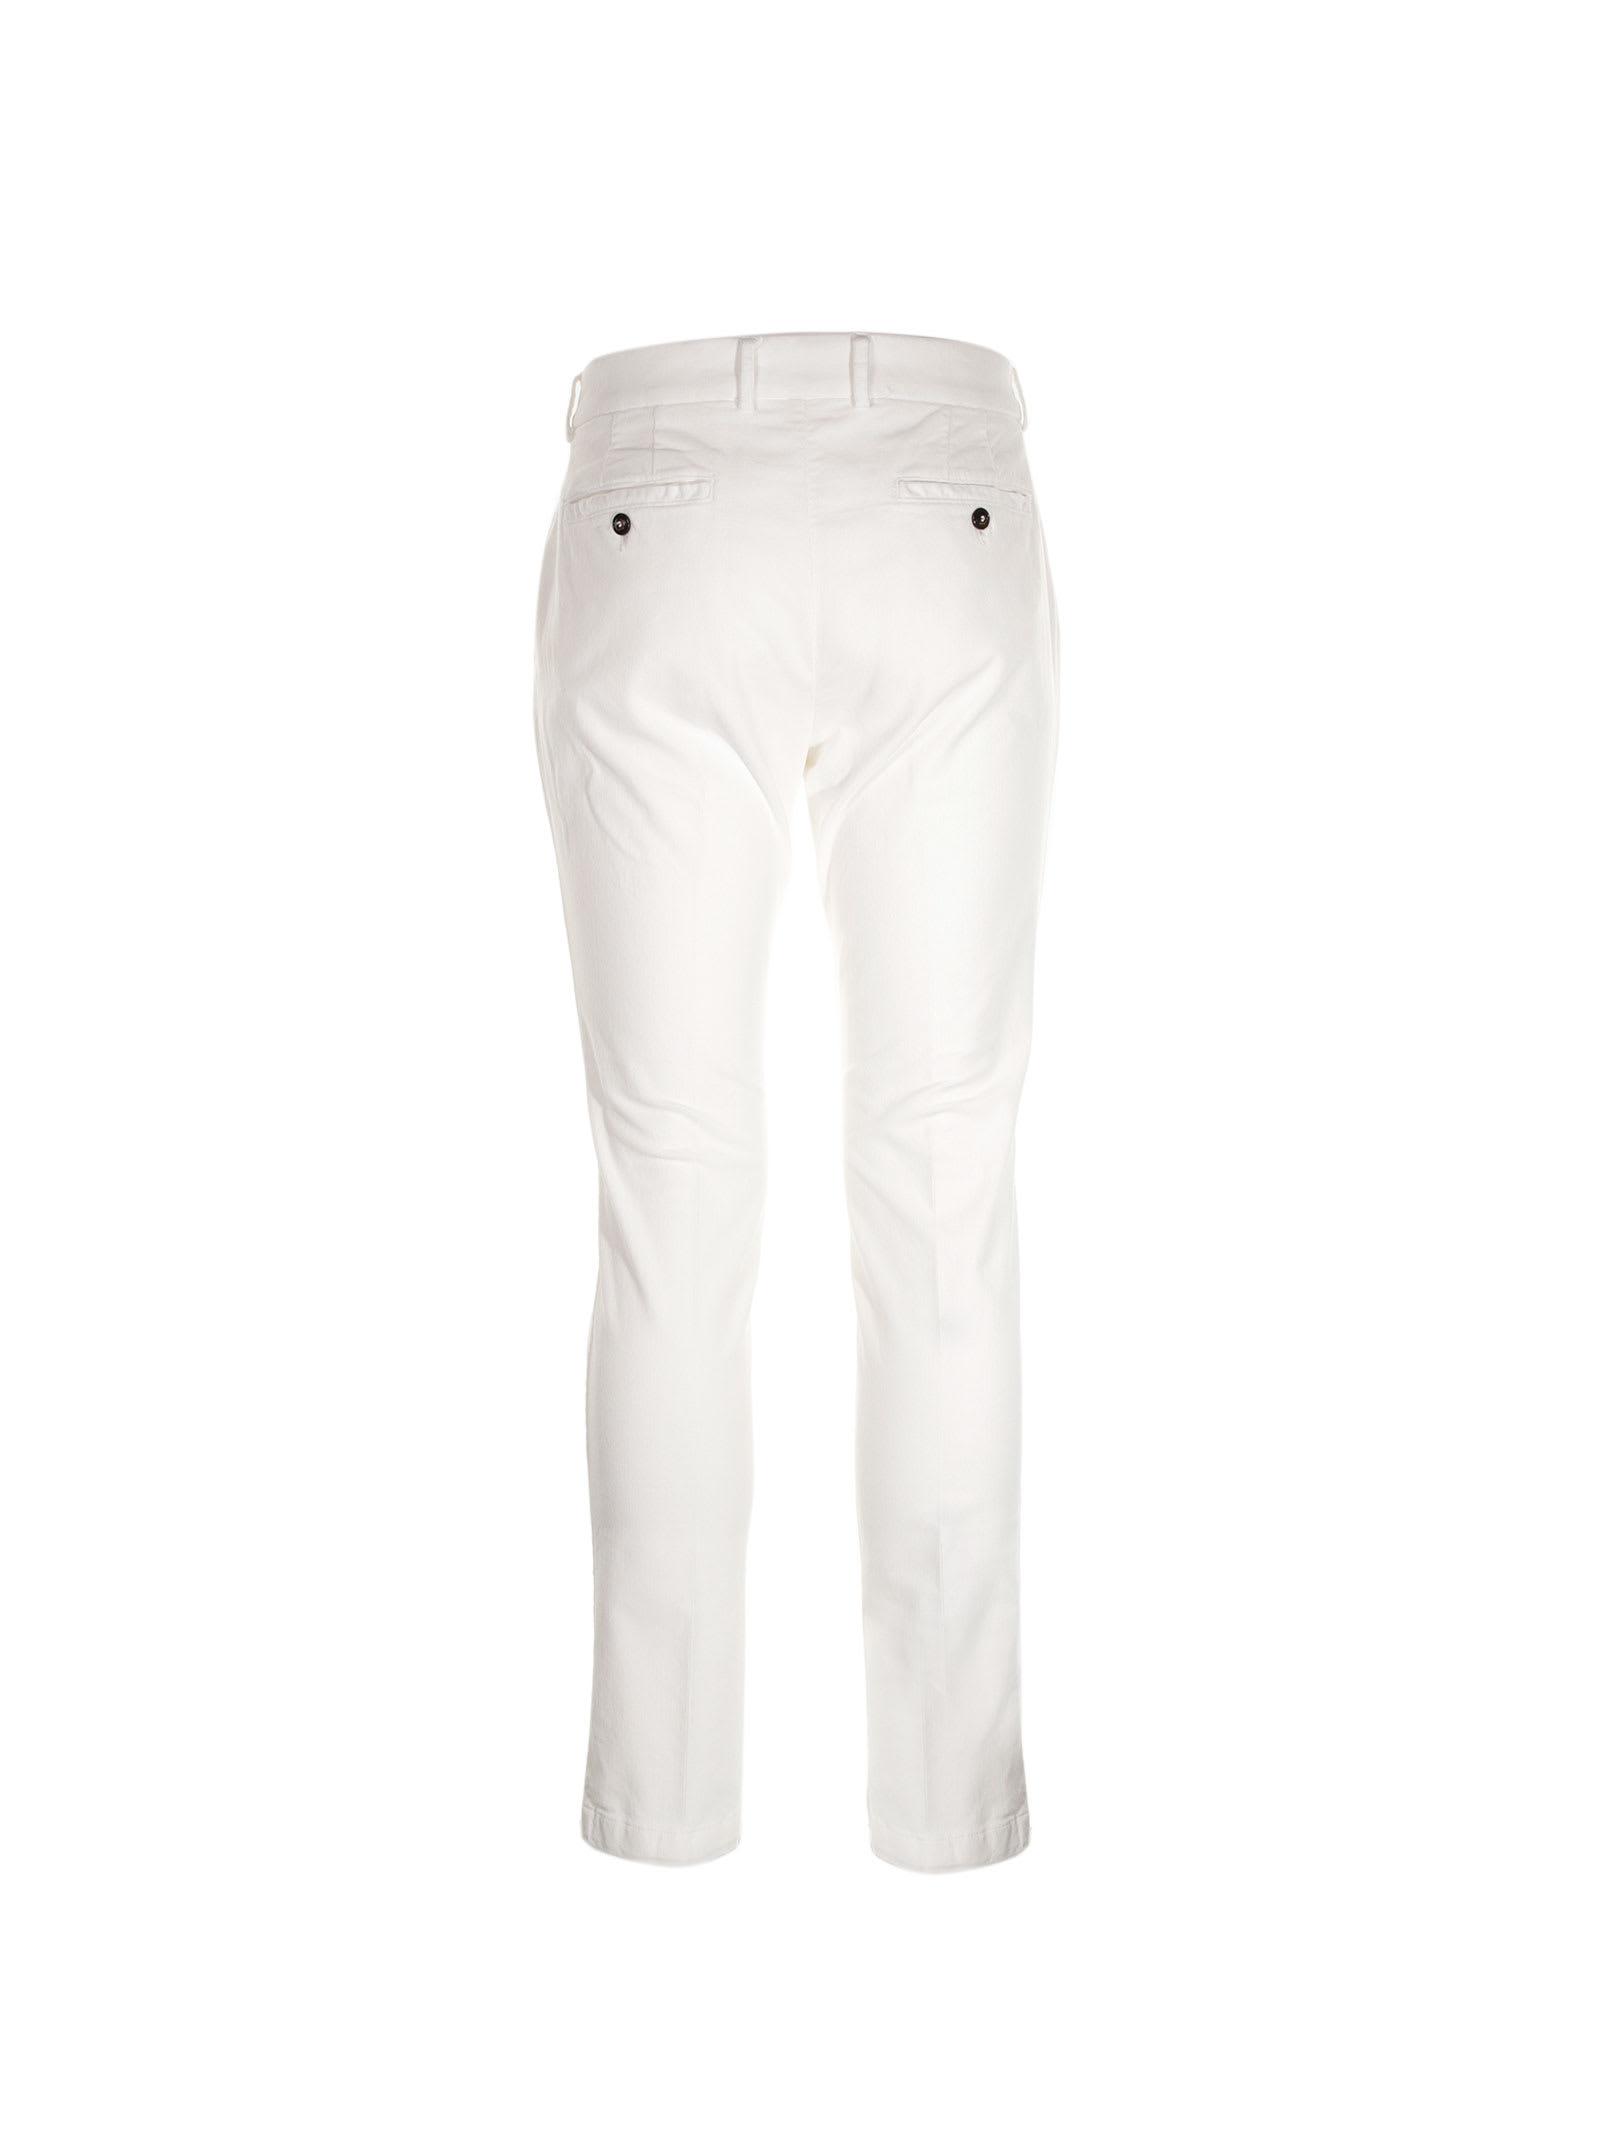 Cruna Brera Slim Fit Trousers in White for Men | Lyst